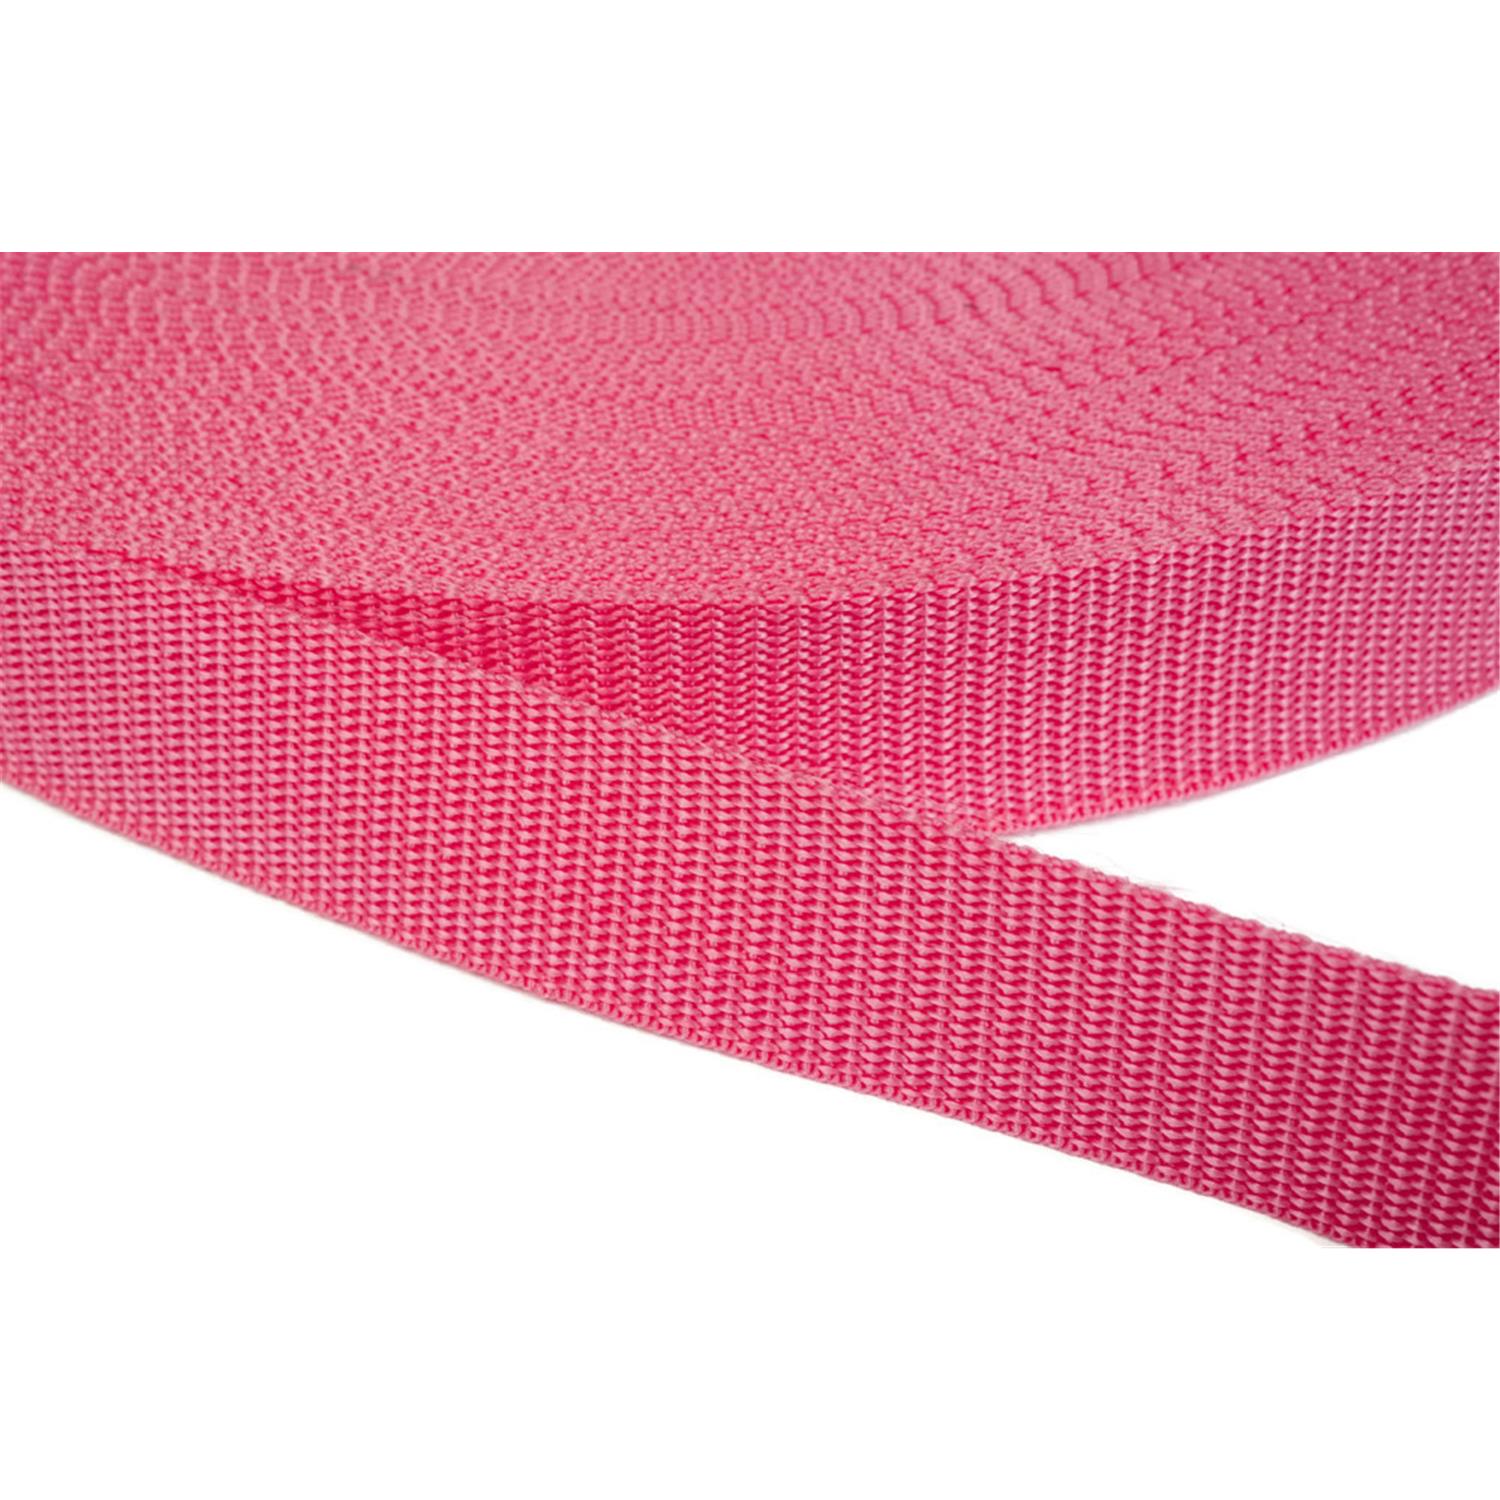 Gurtband 15mm breit aus Polypropylen in 41 Farben 13 - pink 50 Meter